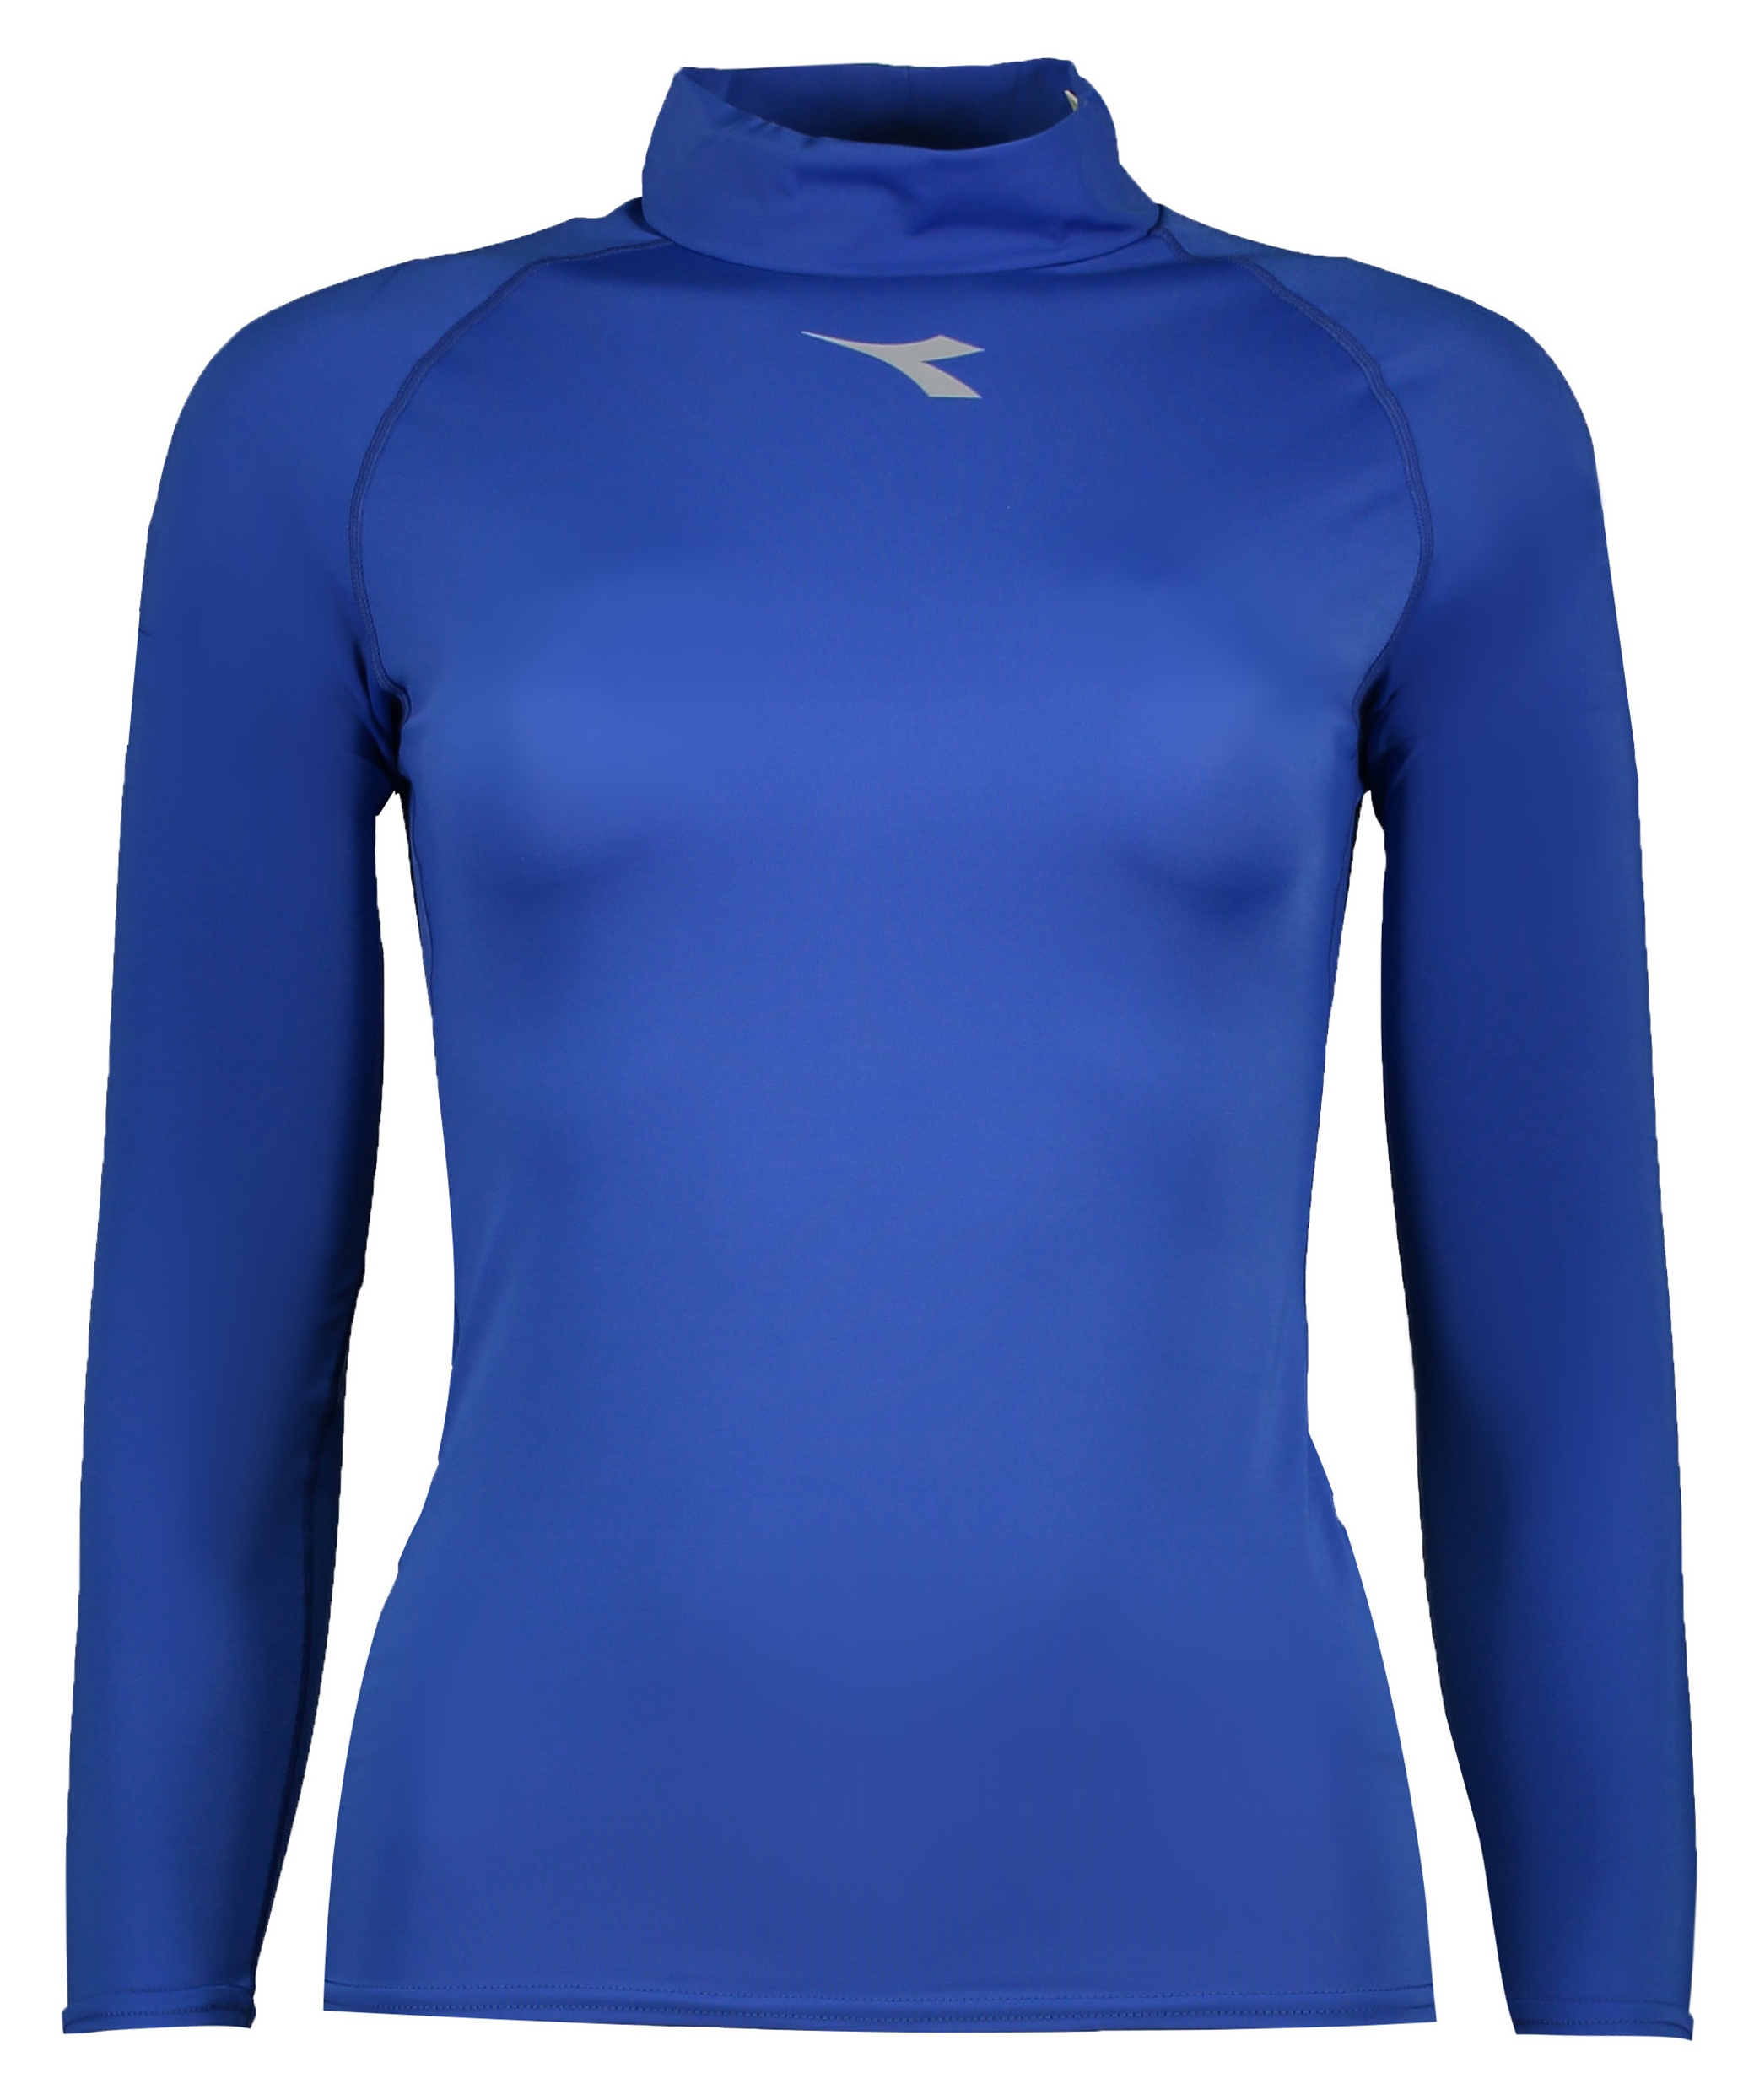 تی شرت ورزشی زنانه دیادورا مدل VSN-9504-BLU